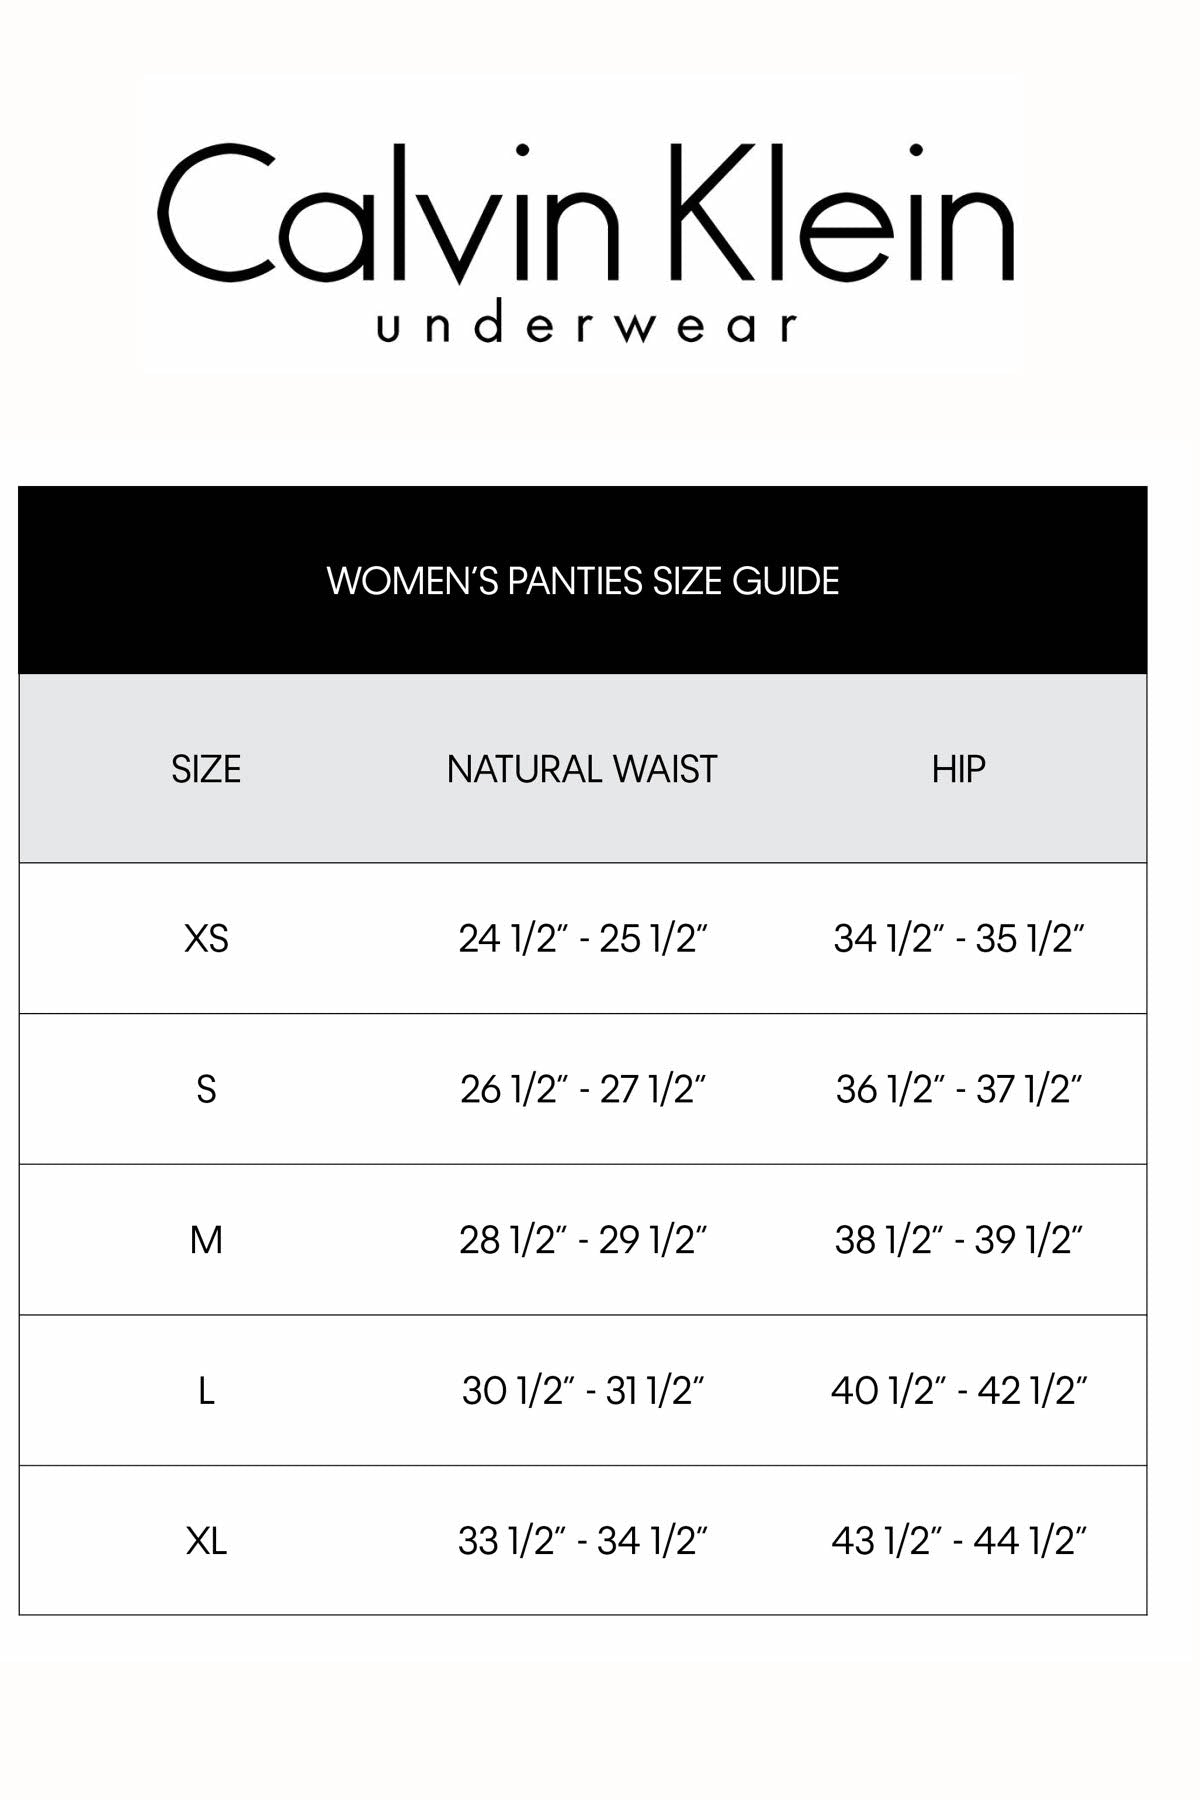 Calvin Klein Black Label Endless Sheer Lace Garter Belt in Ivory